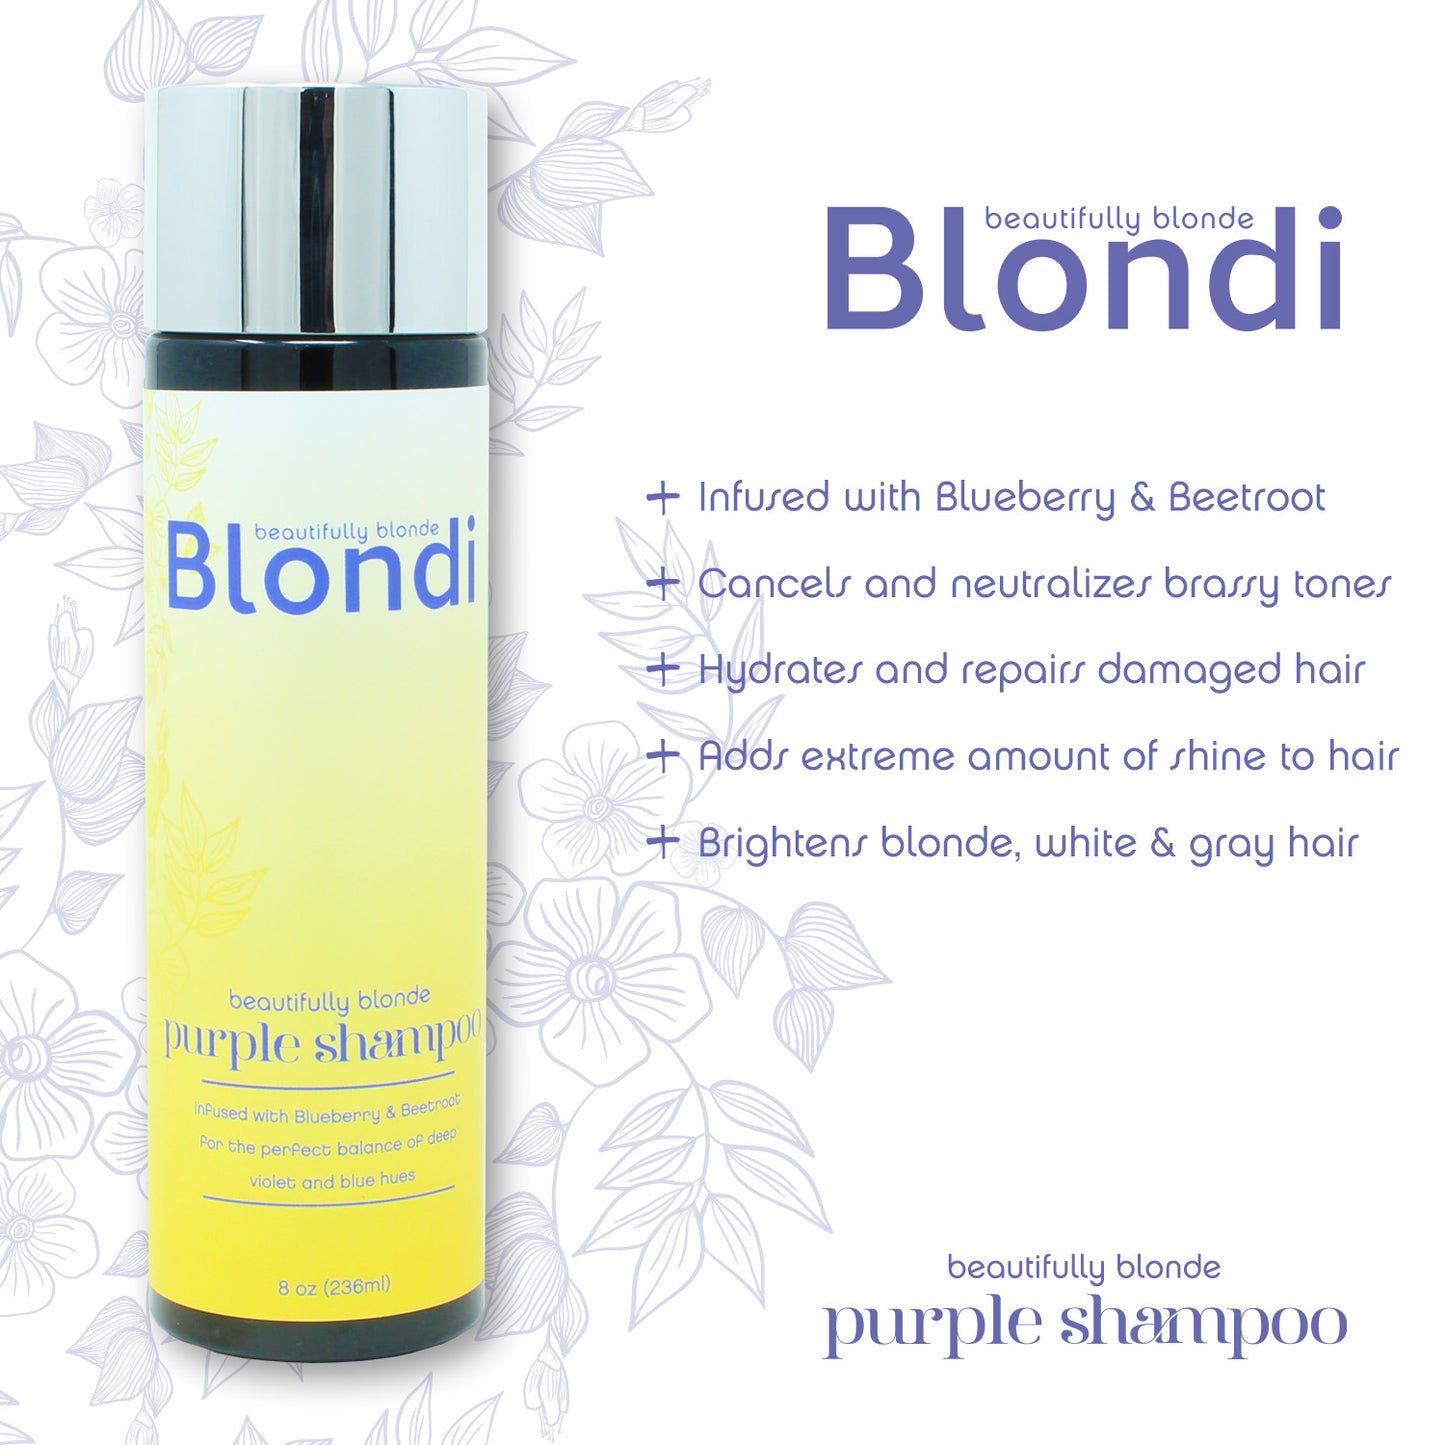 Blondi Beautifully Blonde Purple Shampoo 8oz